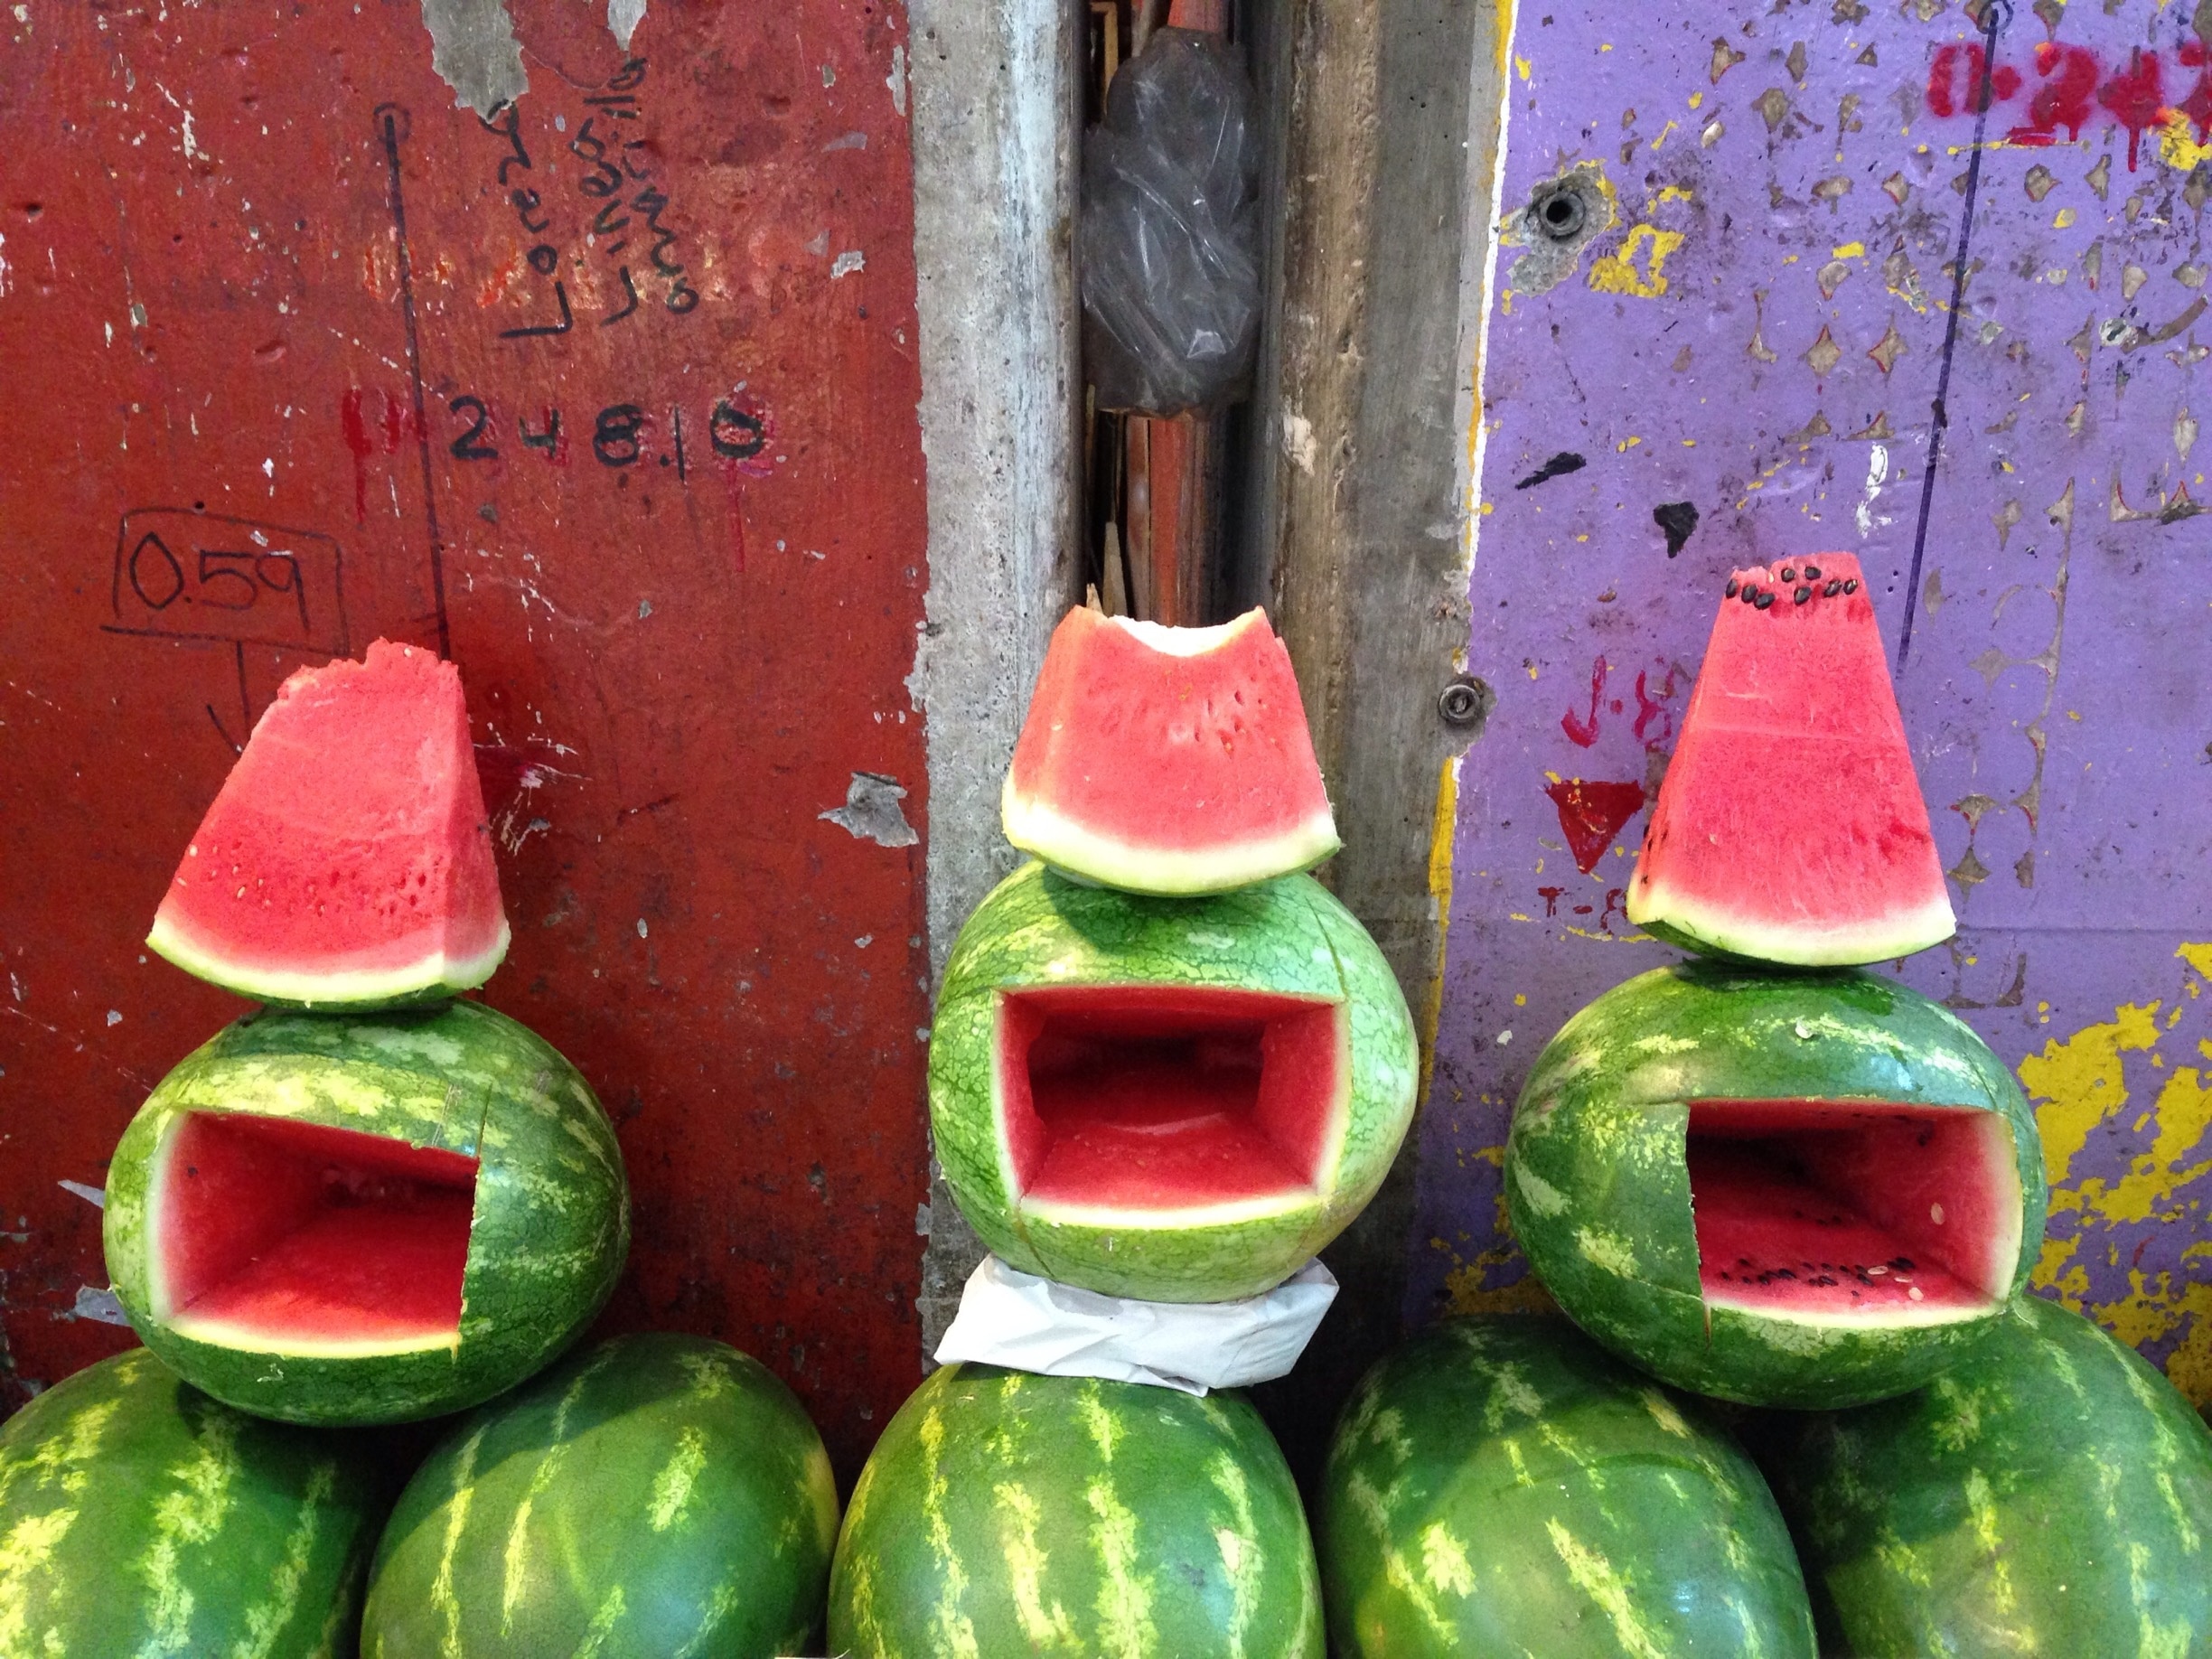 Happy watermelons at central de abastos! #watermelons #happy #market #mexico 